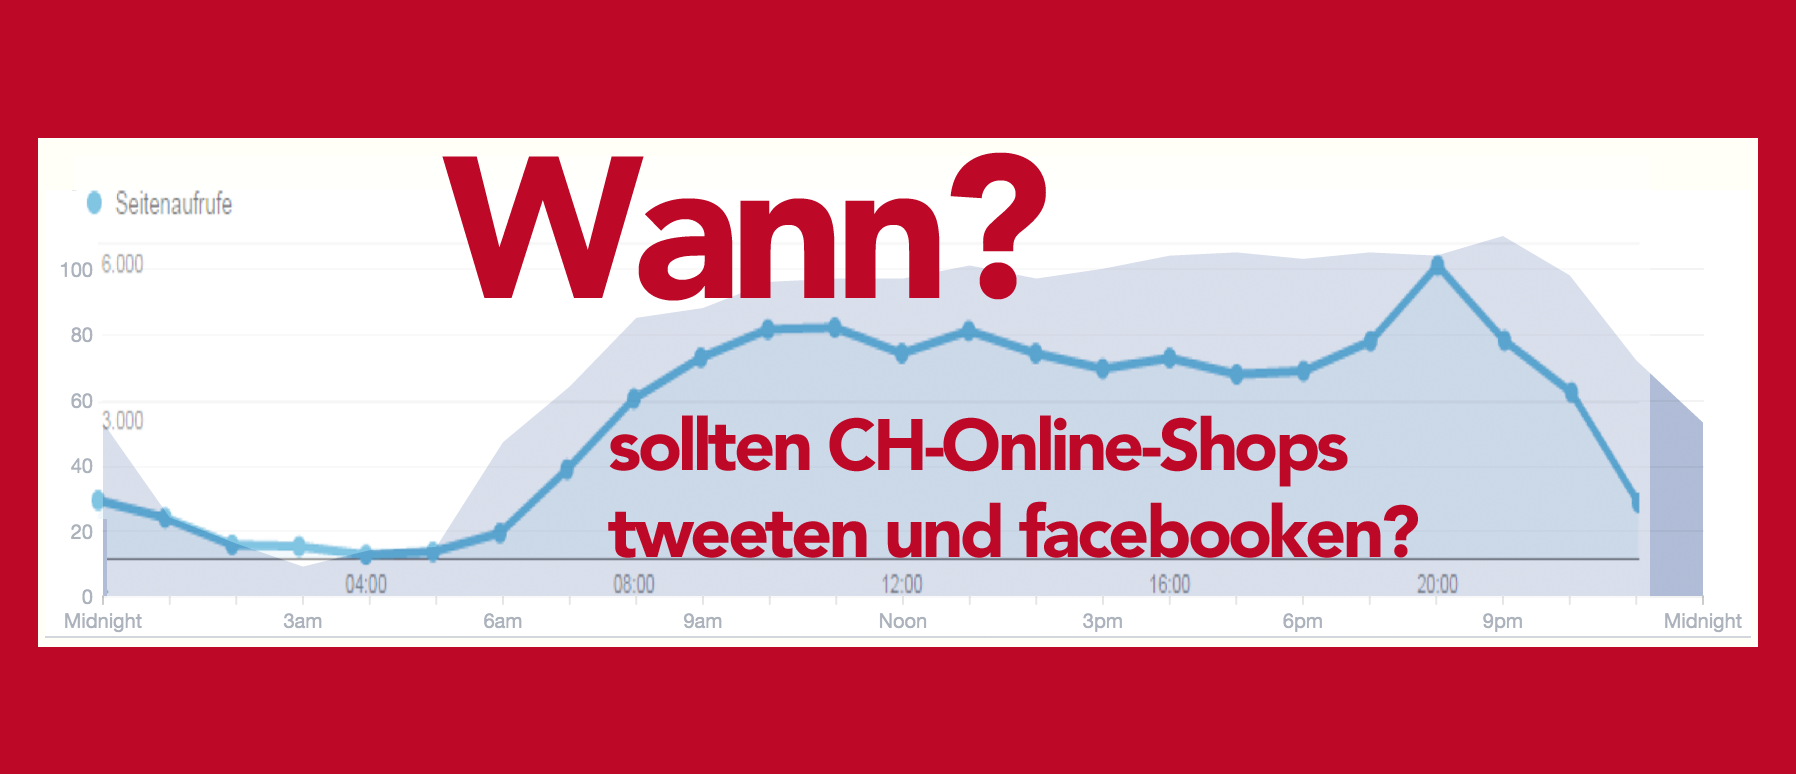 zeiten-online-shops-schweiz